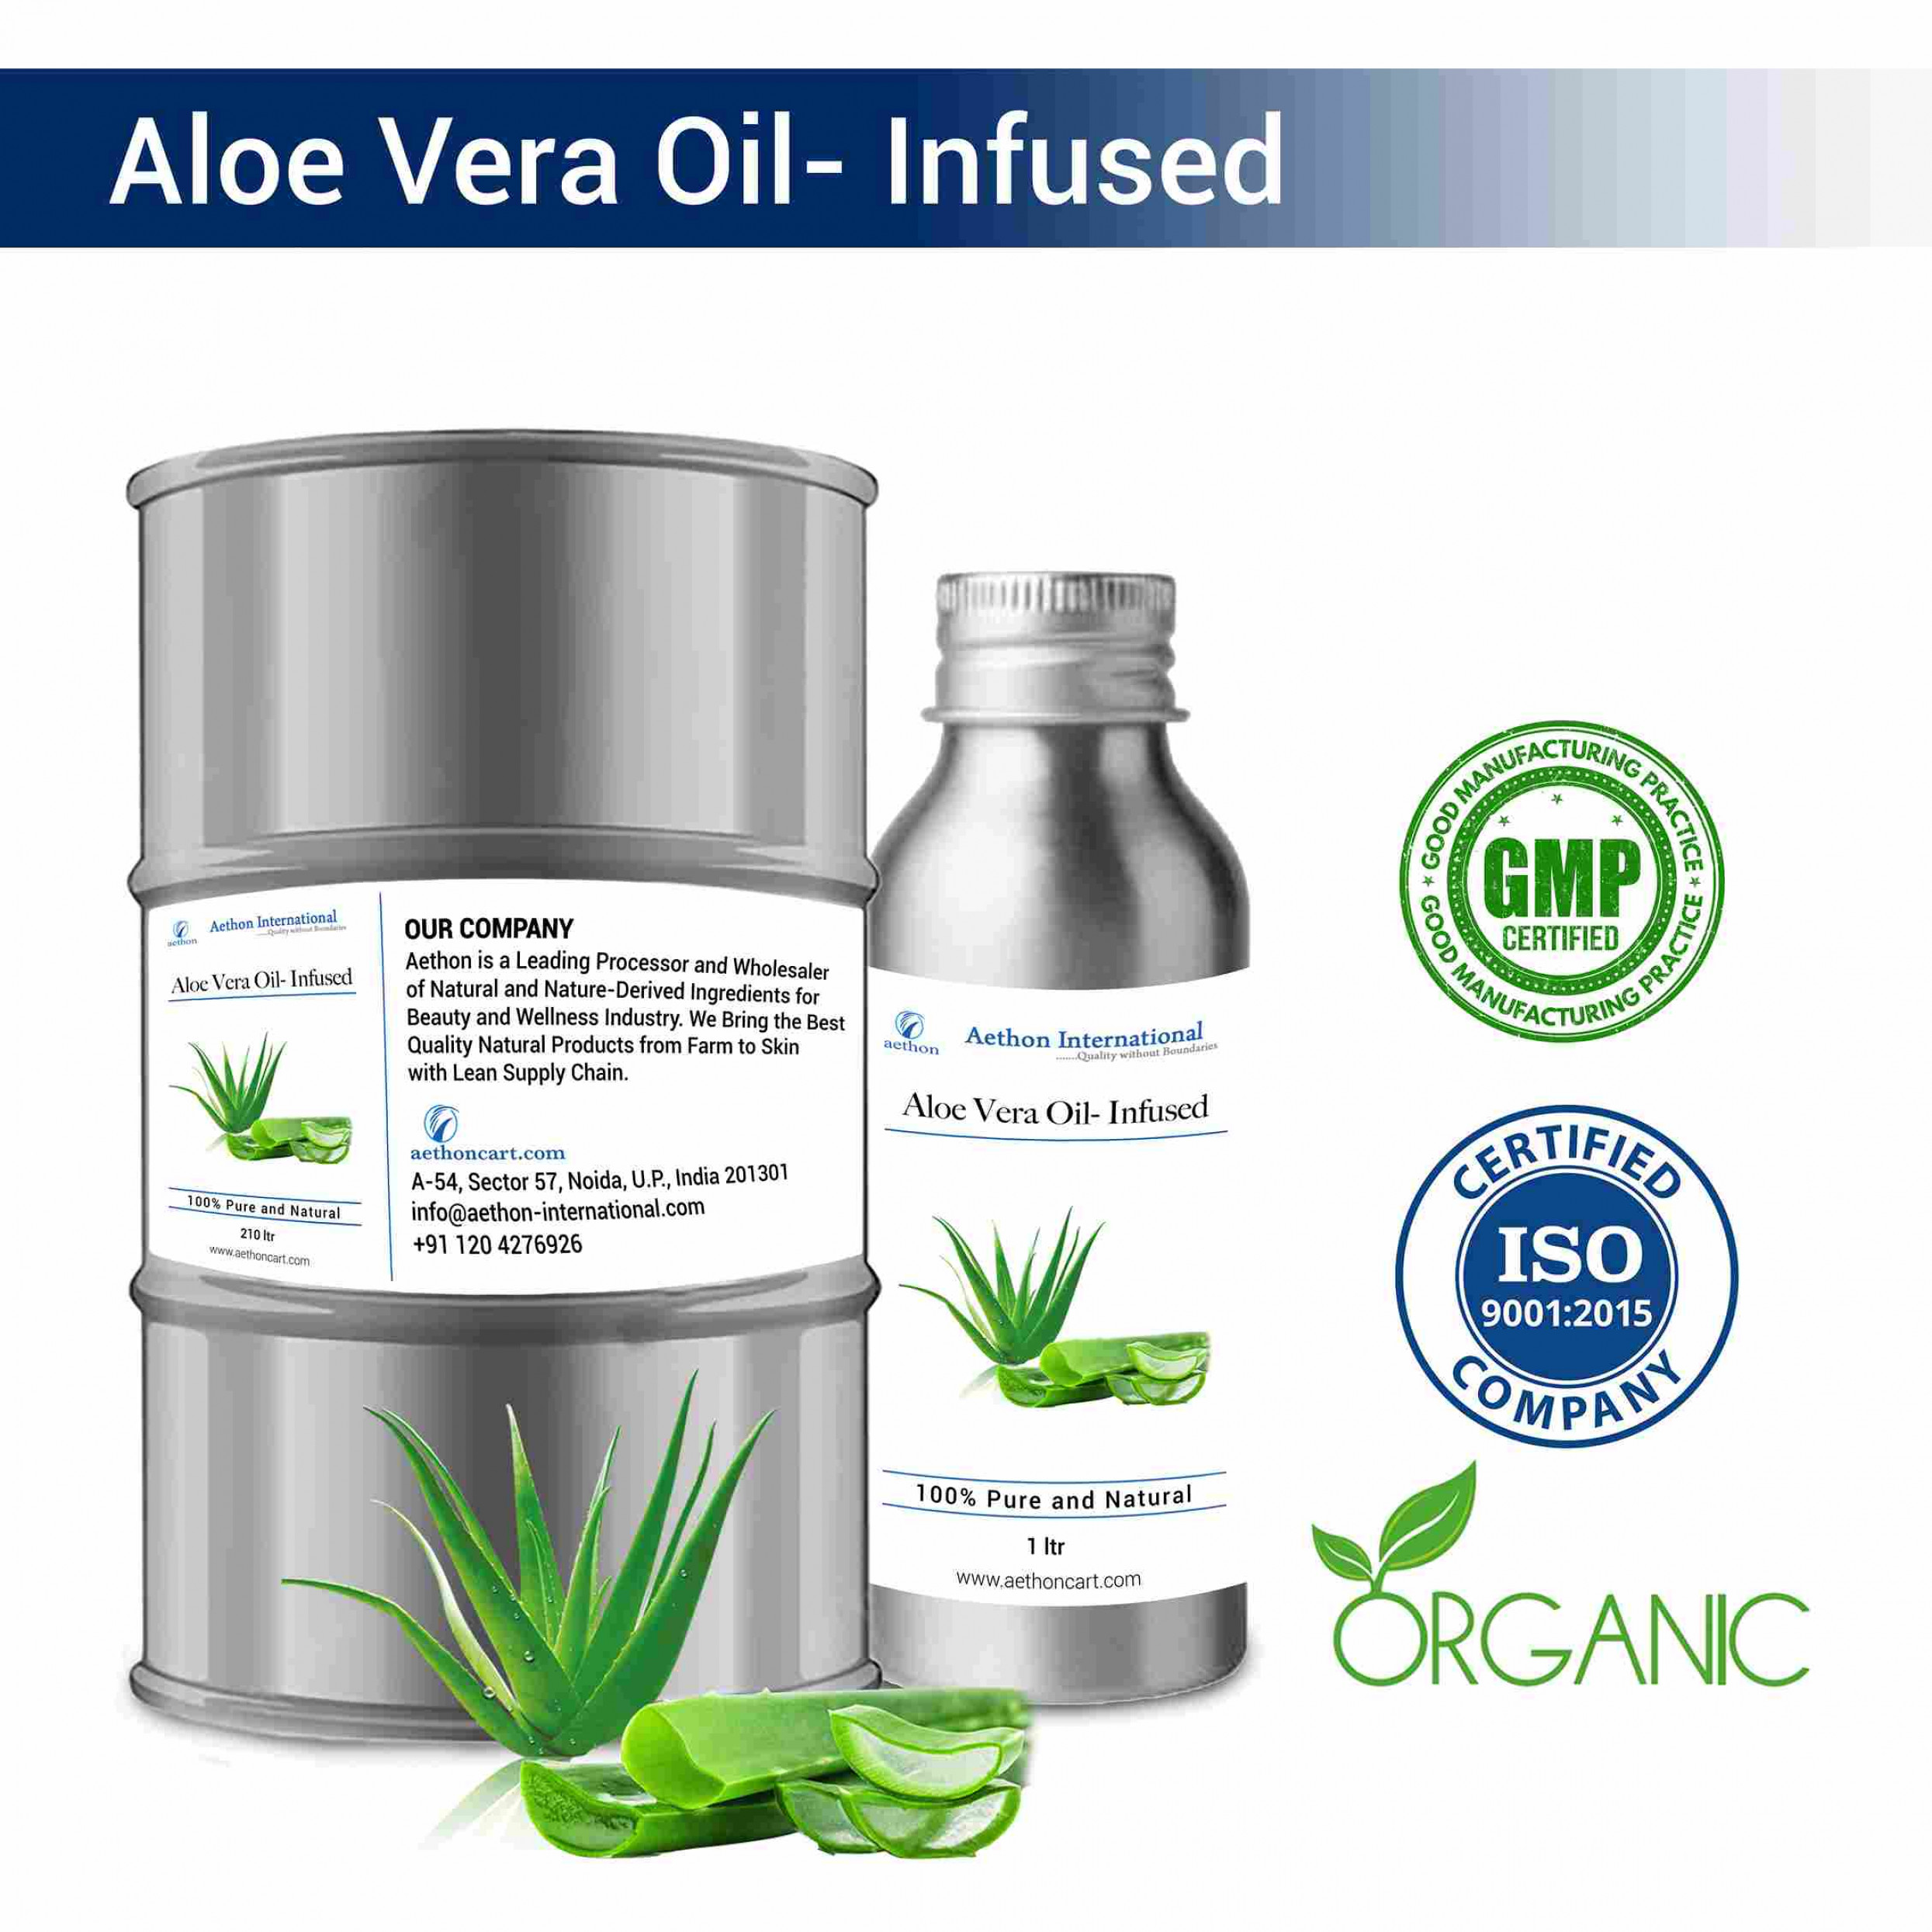 Aloe Vera Oil- Infused